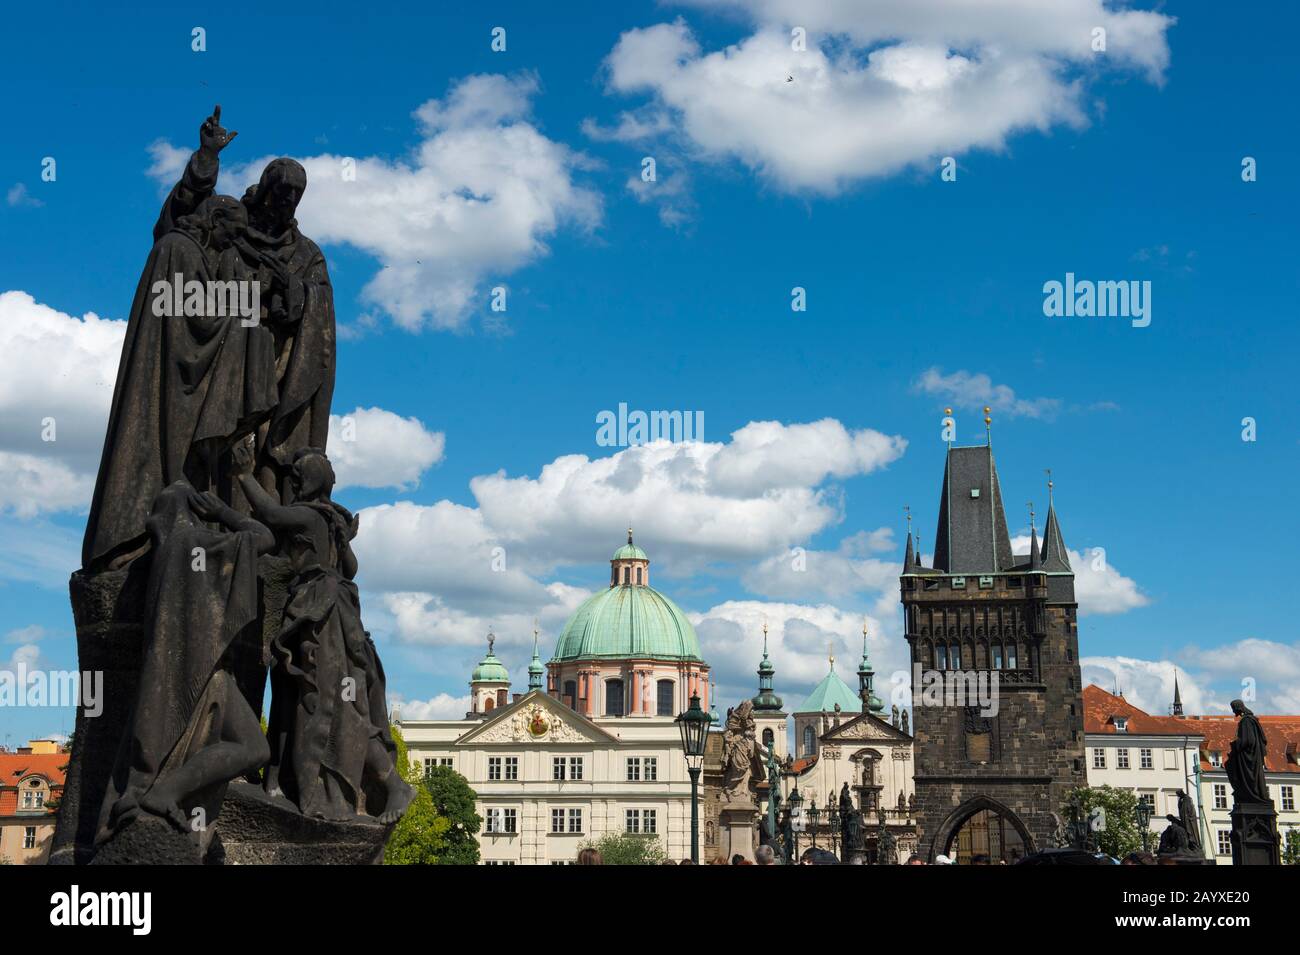 Statuen an der Karlsbrücke in Prag, der Hauptstadt und größten Stadt Tschechiens. Stockfoto